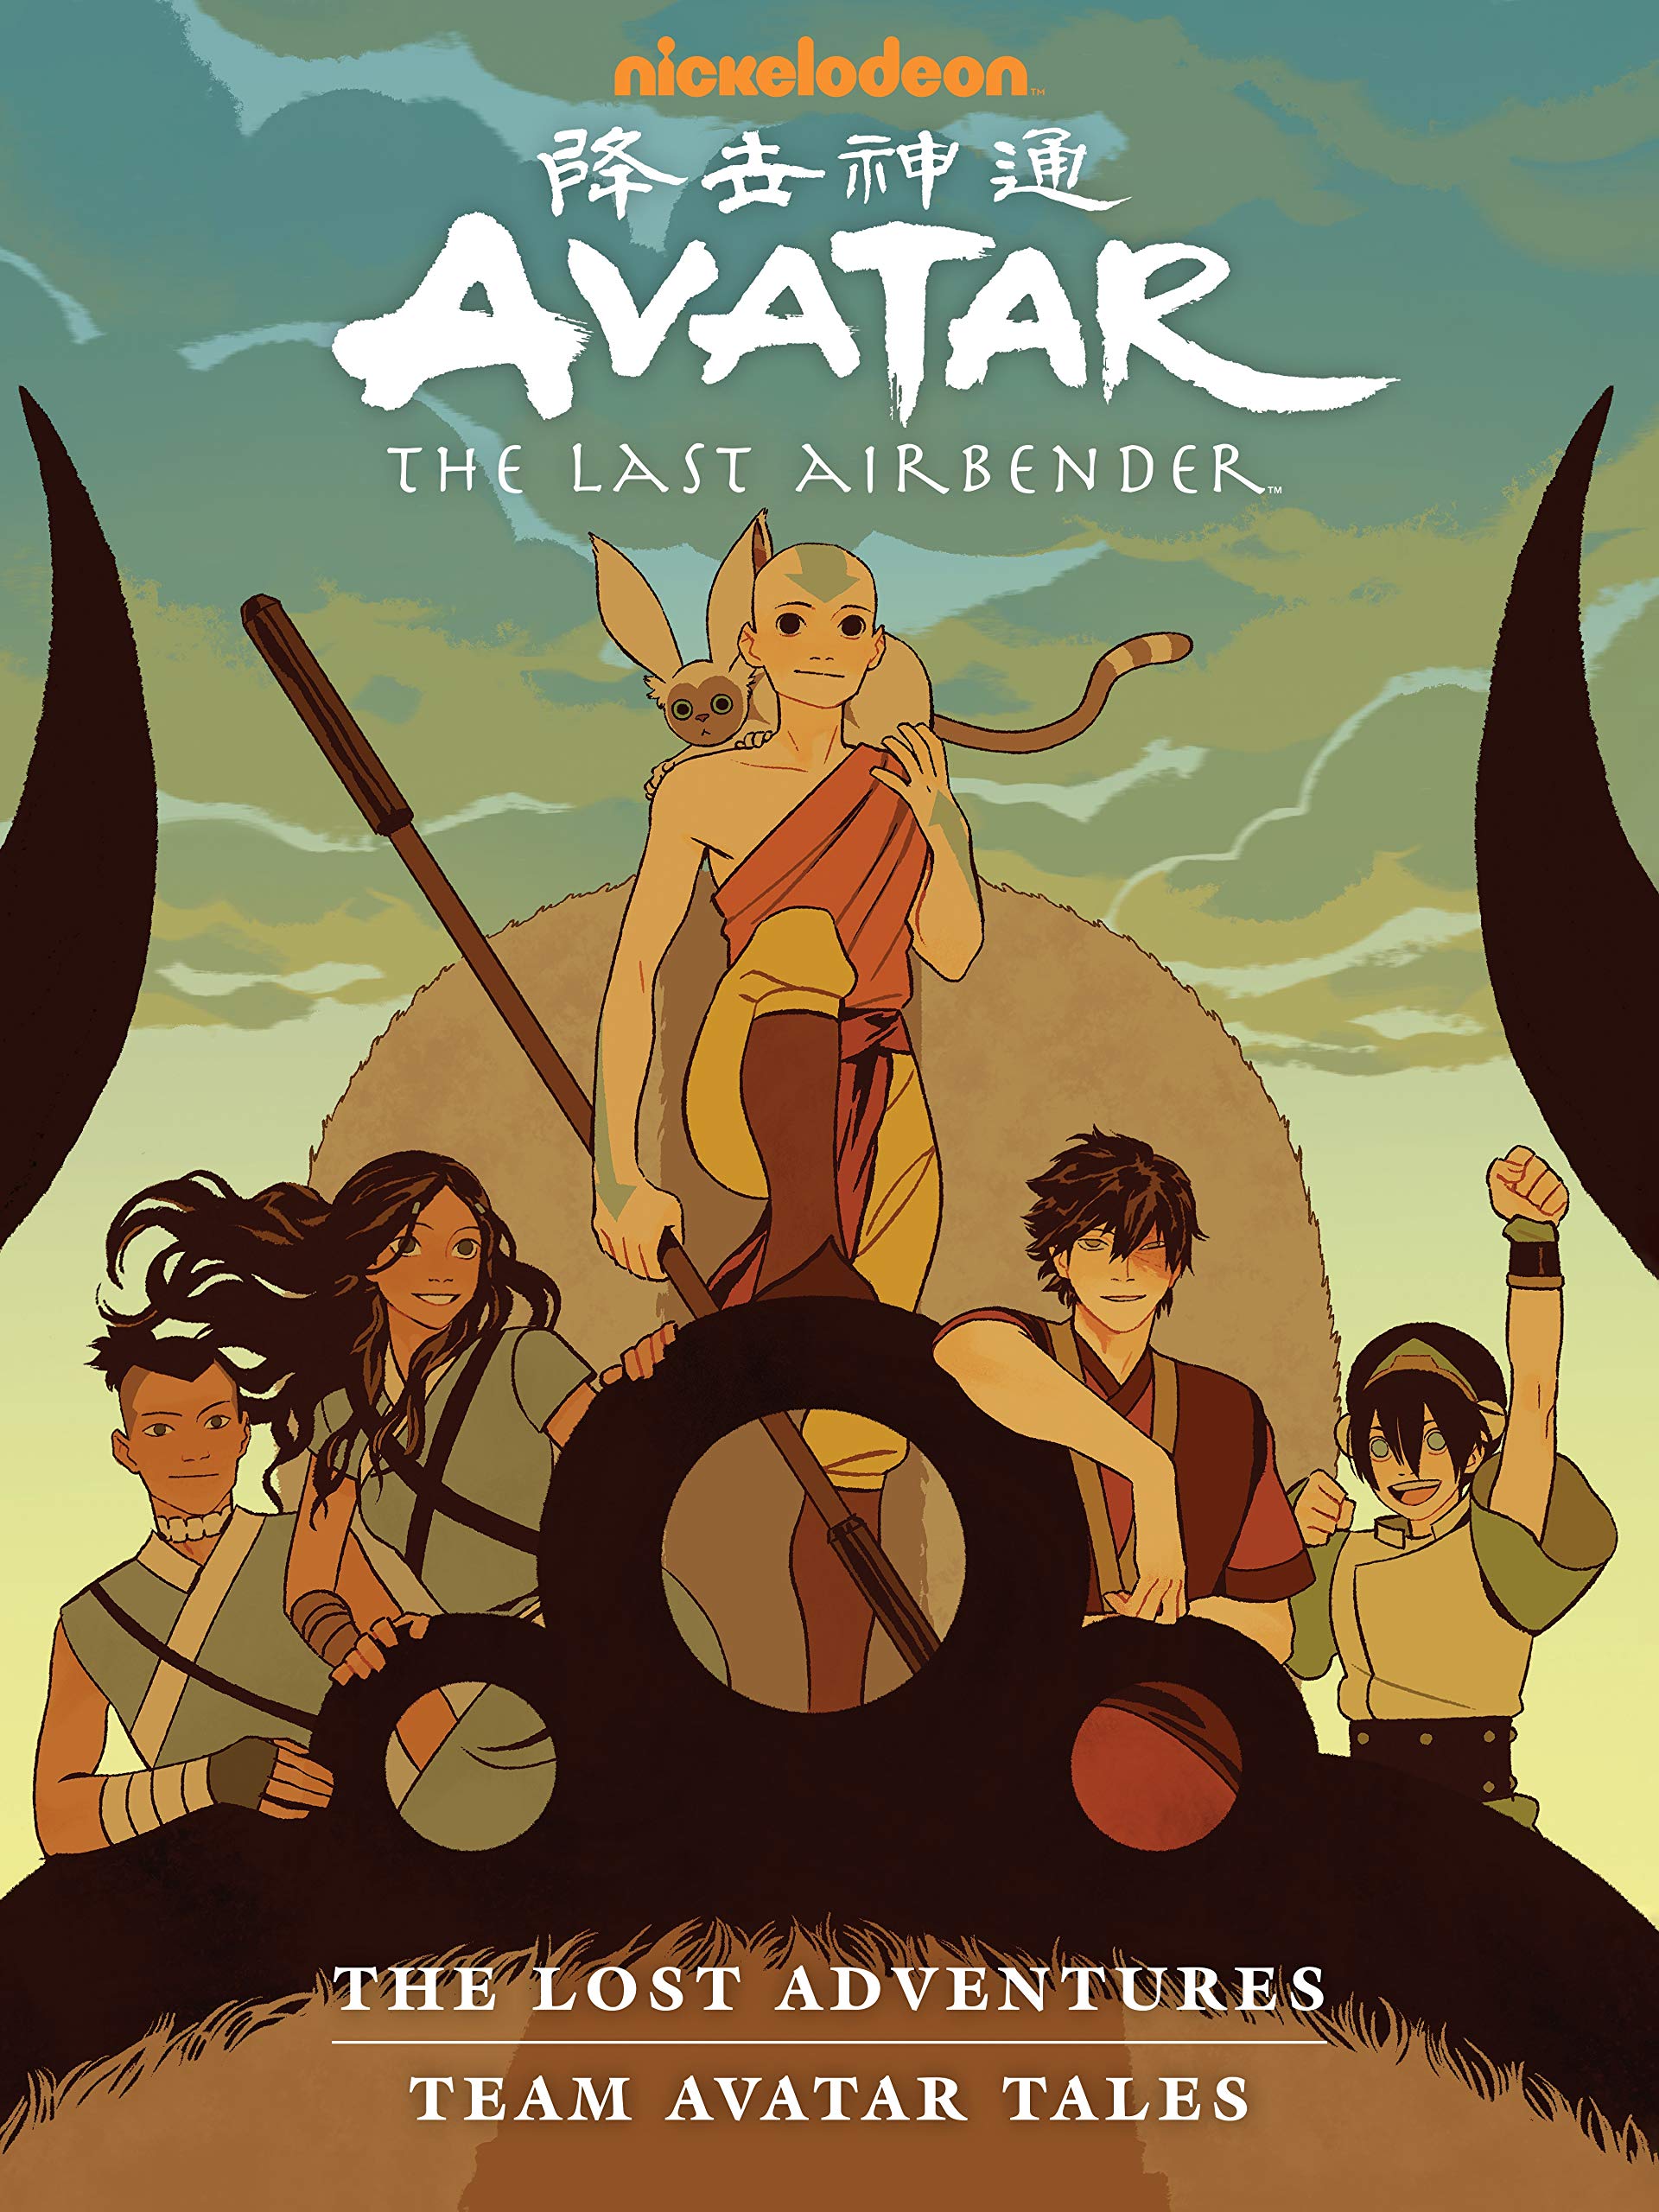 Avatar The Way of Water bỏ túi 53 triệu USD trong ngày ra mắt  VTVVN